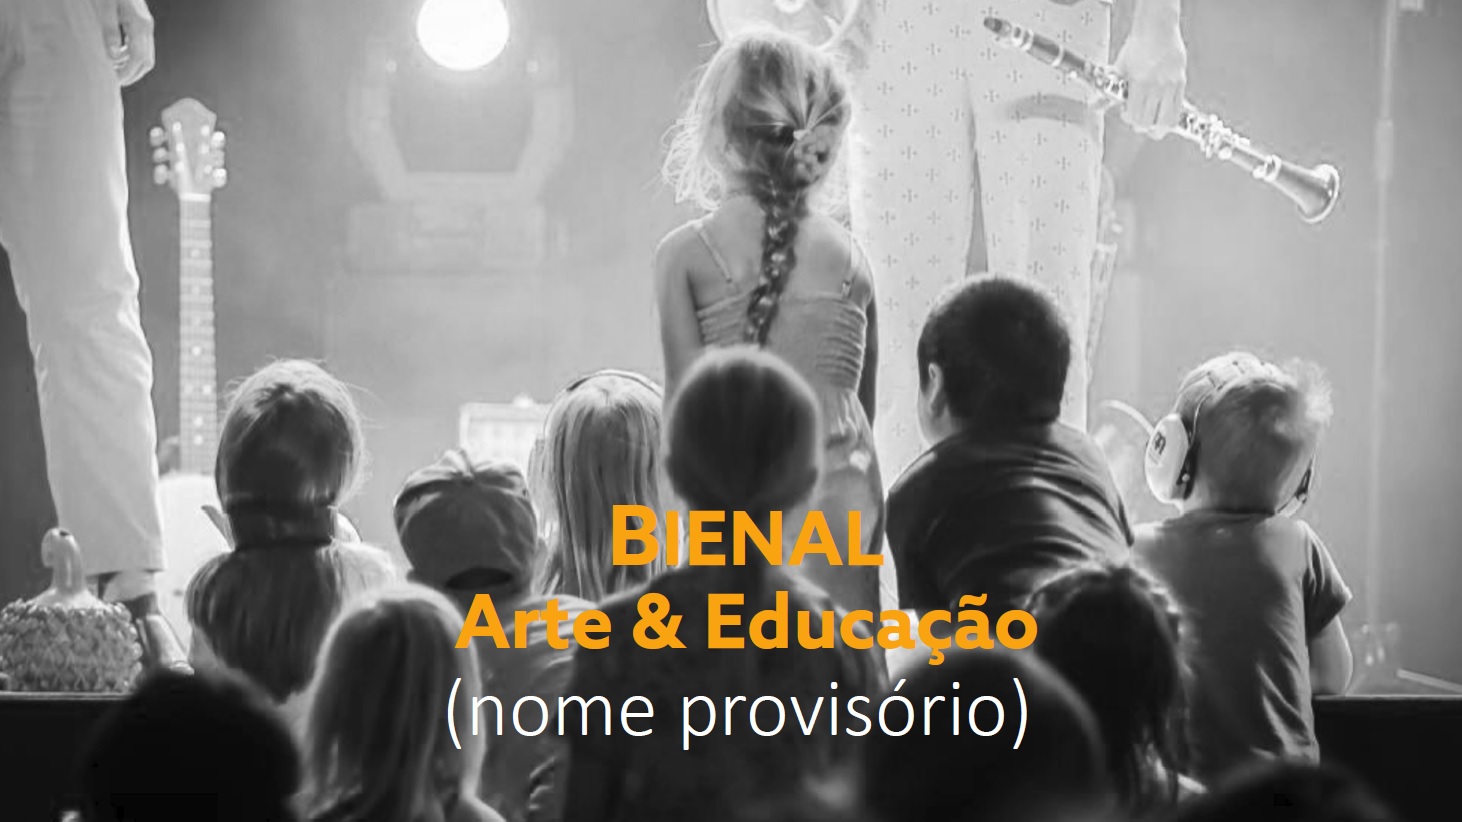 PNA dá a conhecer a Bienal Arte & Educação aos equipamentos credenciados